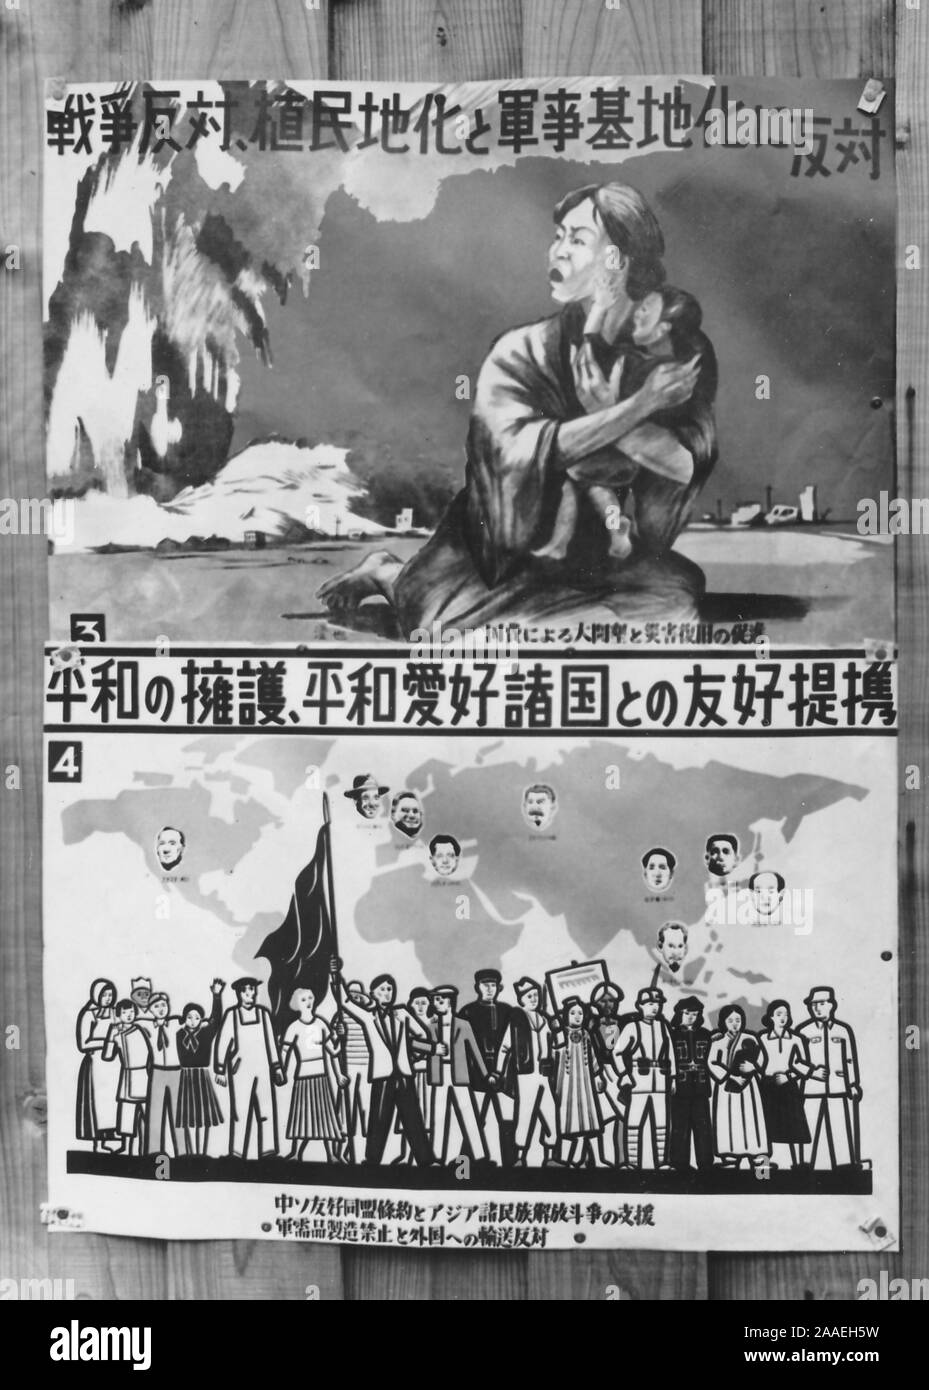 Plakat Darstellung einer Frau und weinende Kind zurück blicken nach einer Explosion im oberen Register, eine Weltkarte mit headshots der führenden Politiker der Welt, und eine Reihe von internationalen Demonstranten, die um den Frieden bittet, in der Präfektur Fukuoka, Japan, 1950. () Stockfoto